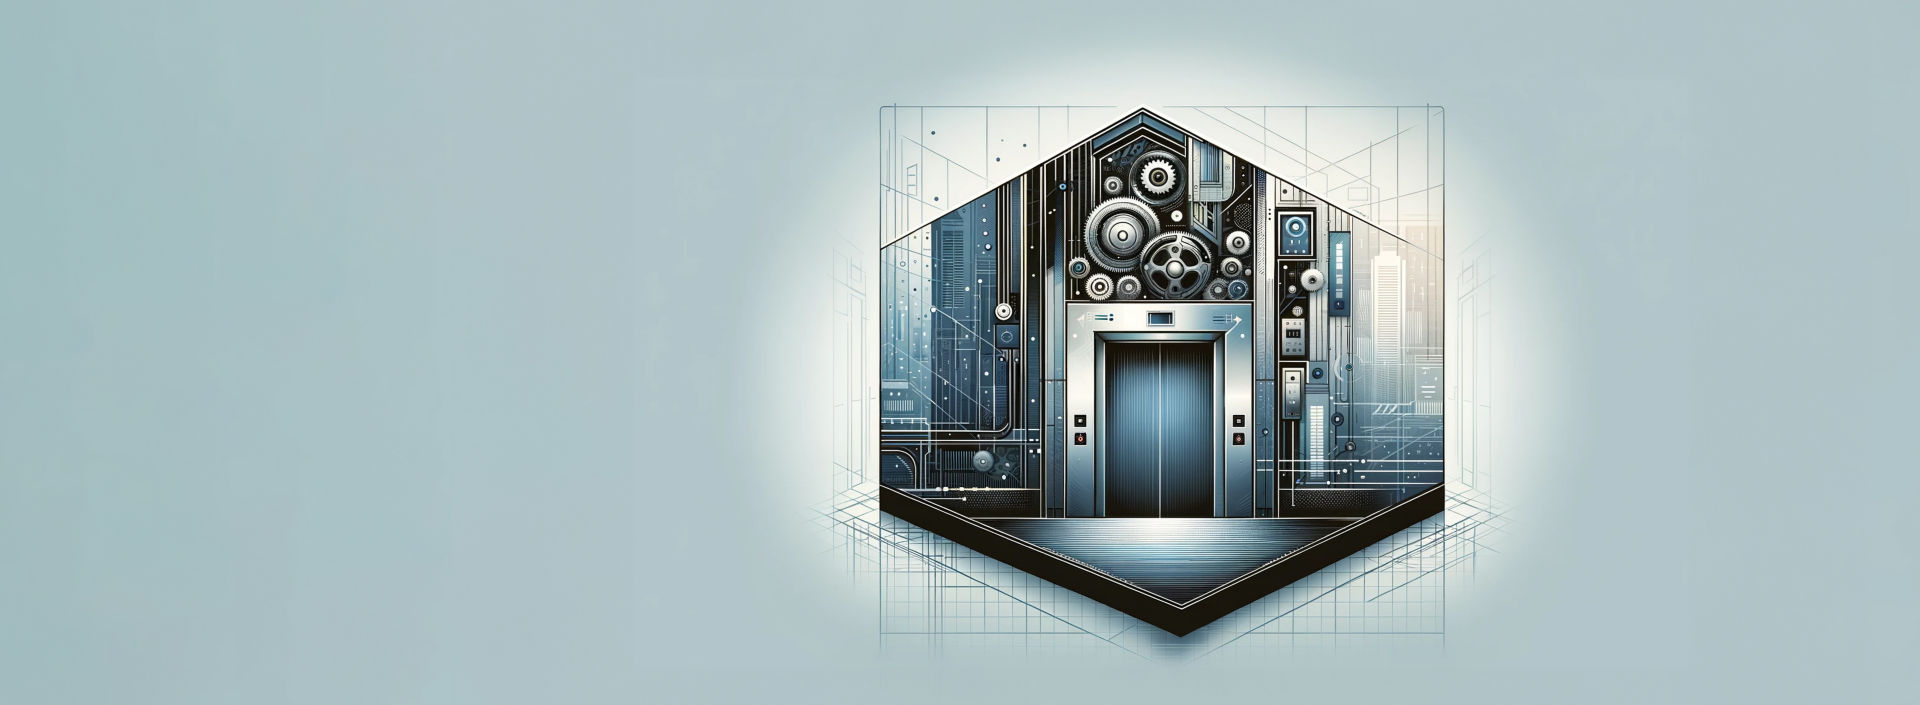 Blog-Graphic-Elevator-Maintenance-1:1920x705%28hero%29